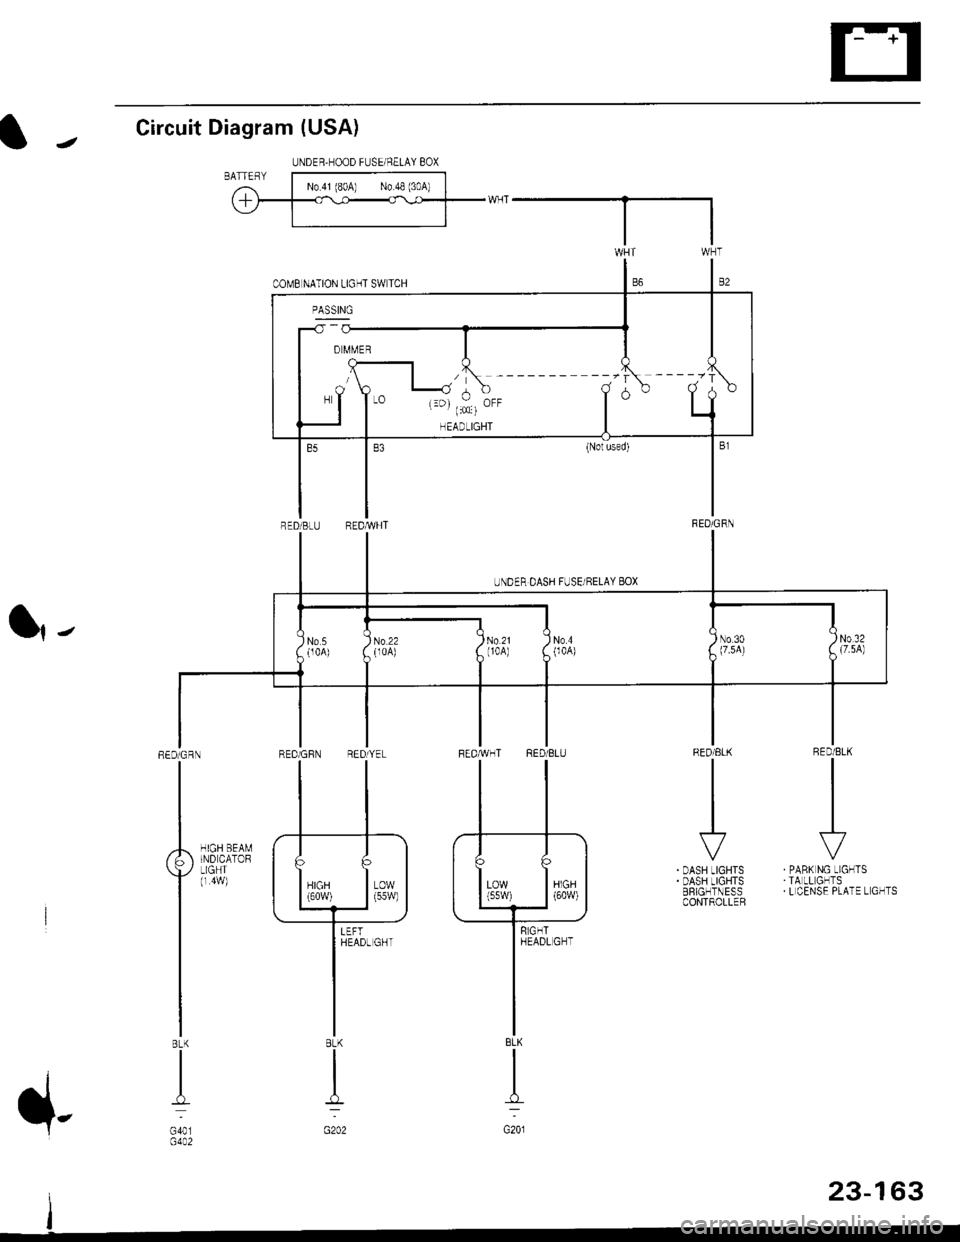 HONDA CIVIC 2000 6.G Workshop Manual Circuit Diagram (USA)
l|-
RED/BLK
II
I
\?
PABK NG LIGHTSTA LL GHTSL CENSE PLATE L GHTS
RED/ELK
III
I
r
DASH LIGHTSDASH LIGHTSERIGHTNESSCONTROLLER
HIGH BEAMIND CATORLIGHT(r 4w)
REDiGRN
I
BLK
I
G401G4A